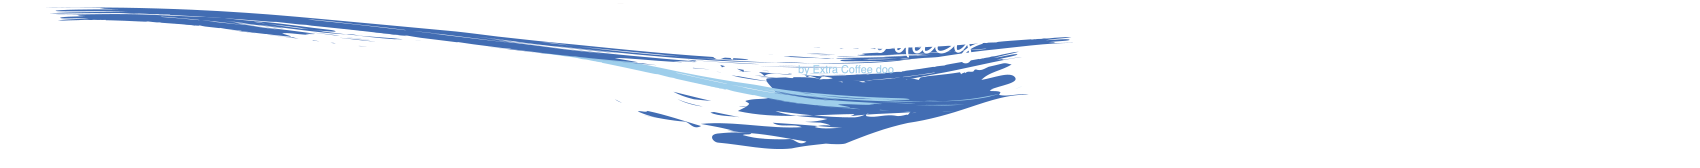 Grčki proizvodi – Greek Products